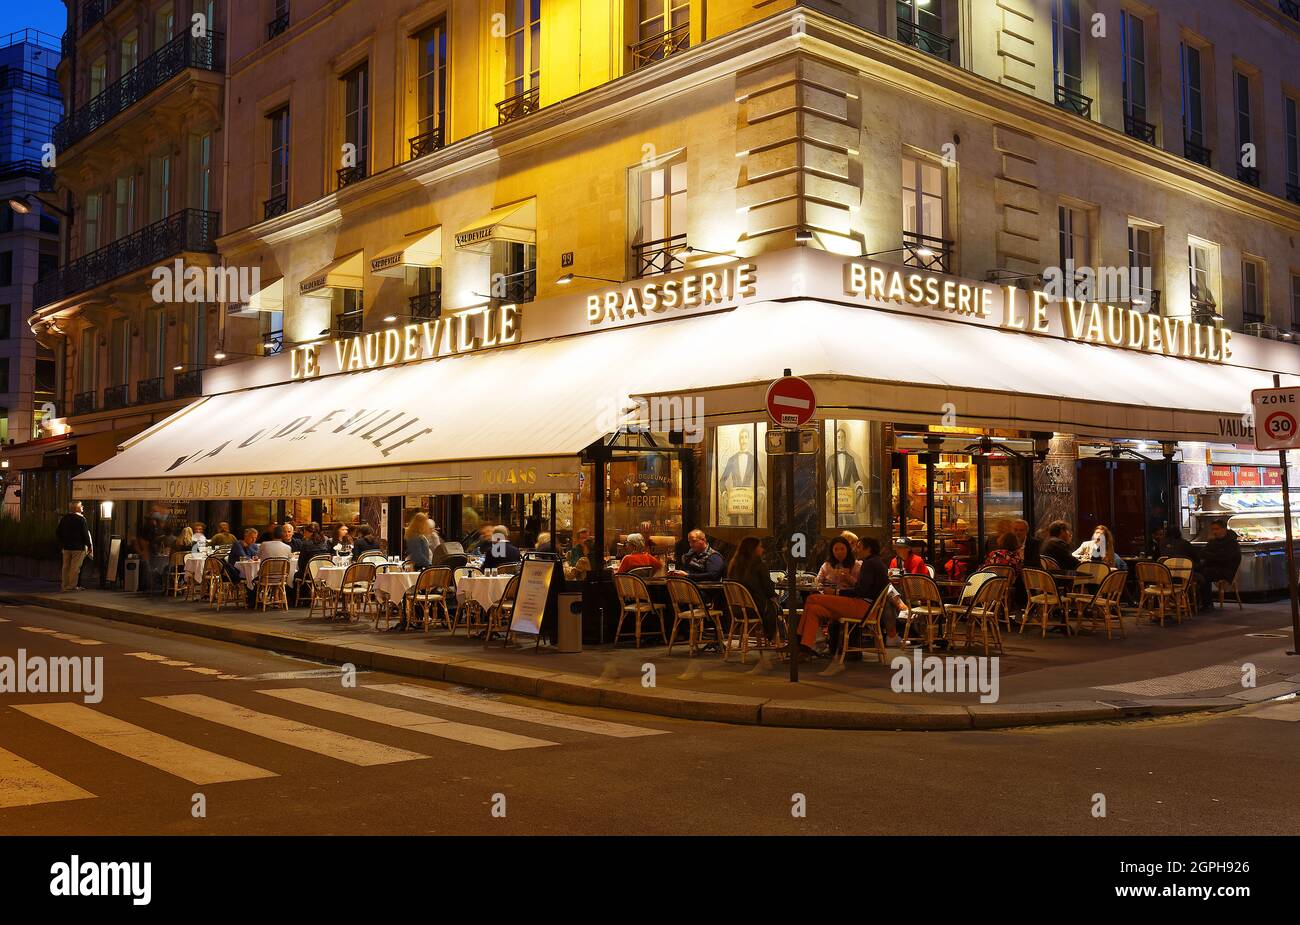 La cuisine française brasserie Le vaudeville la nuit. Il est situé près de palais Brogniart à Paris, France. Banque D'Images